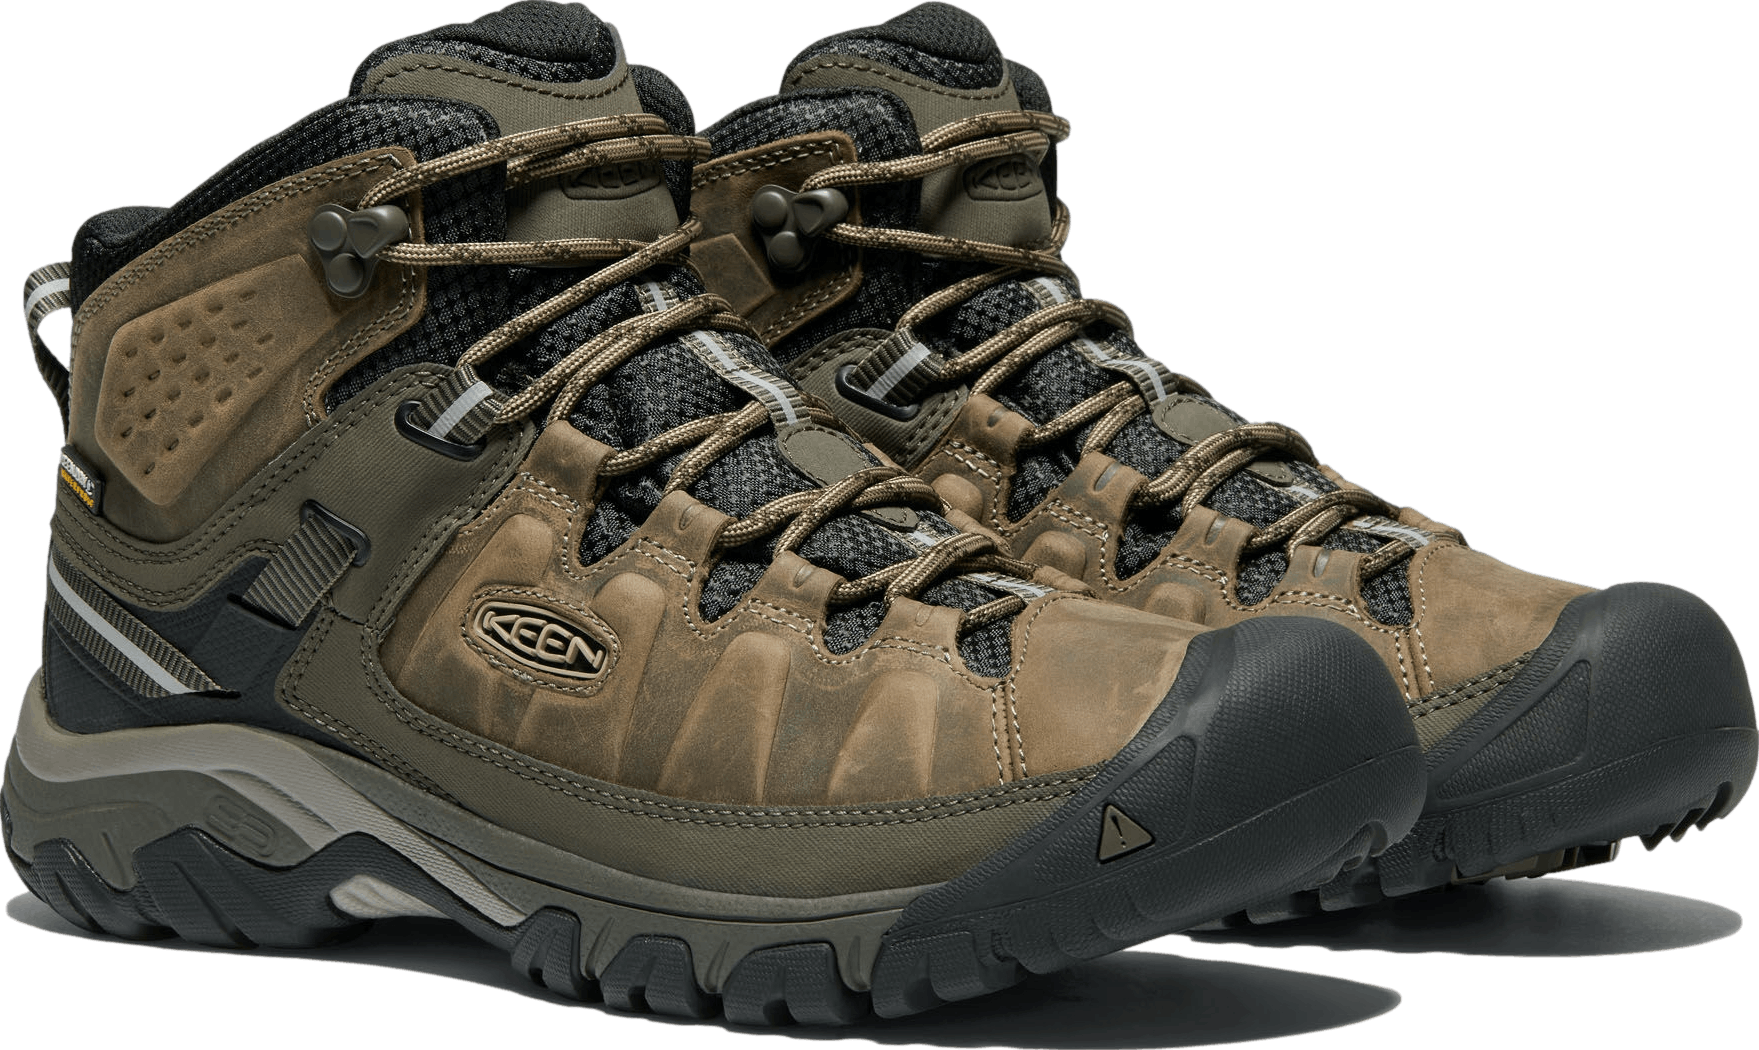 KEEN Men's Targhee III Waterproof Mid Hiking Boots